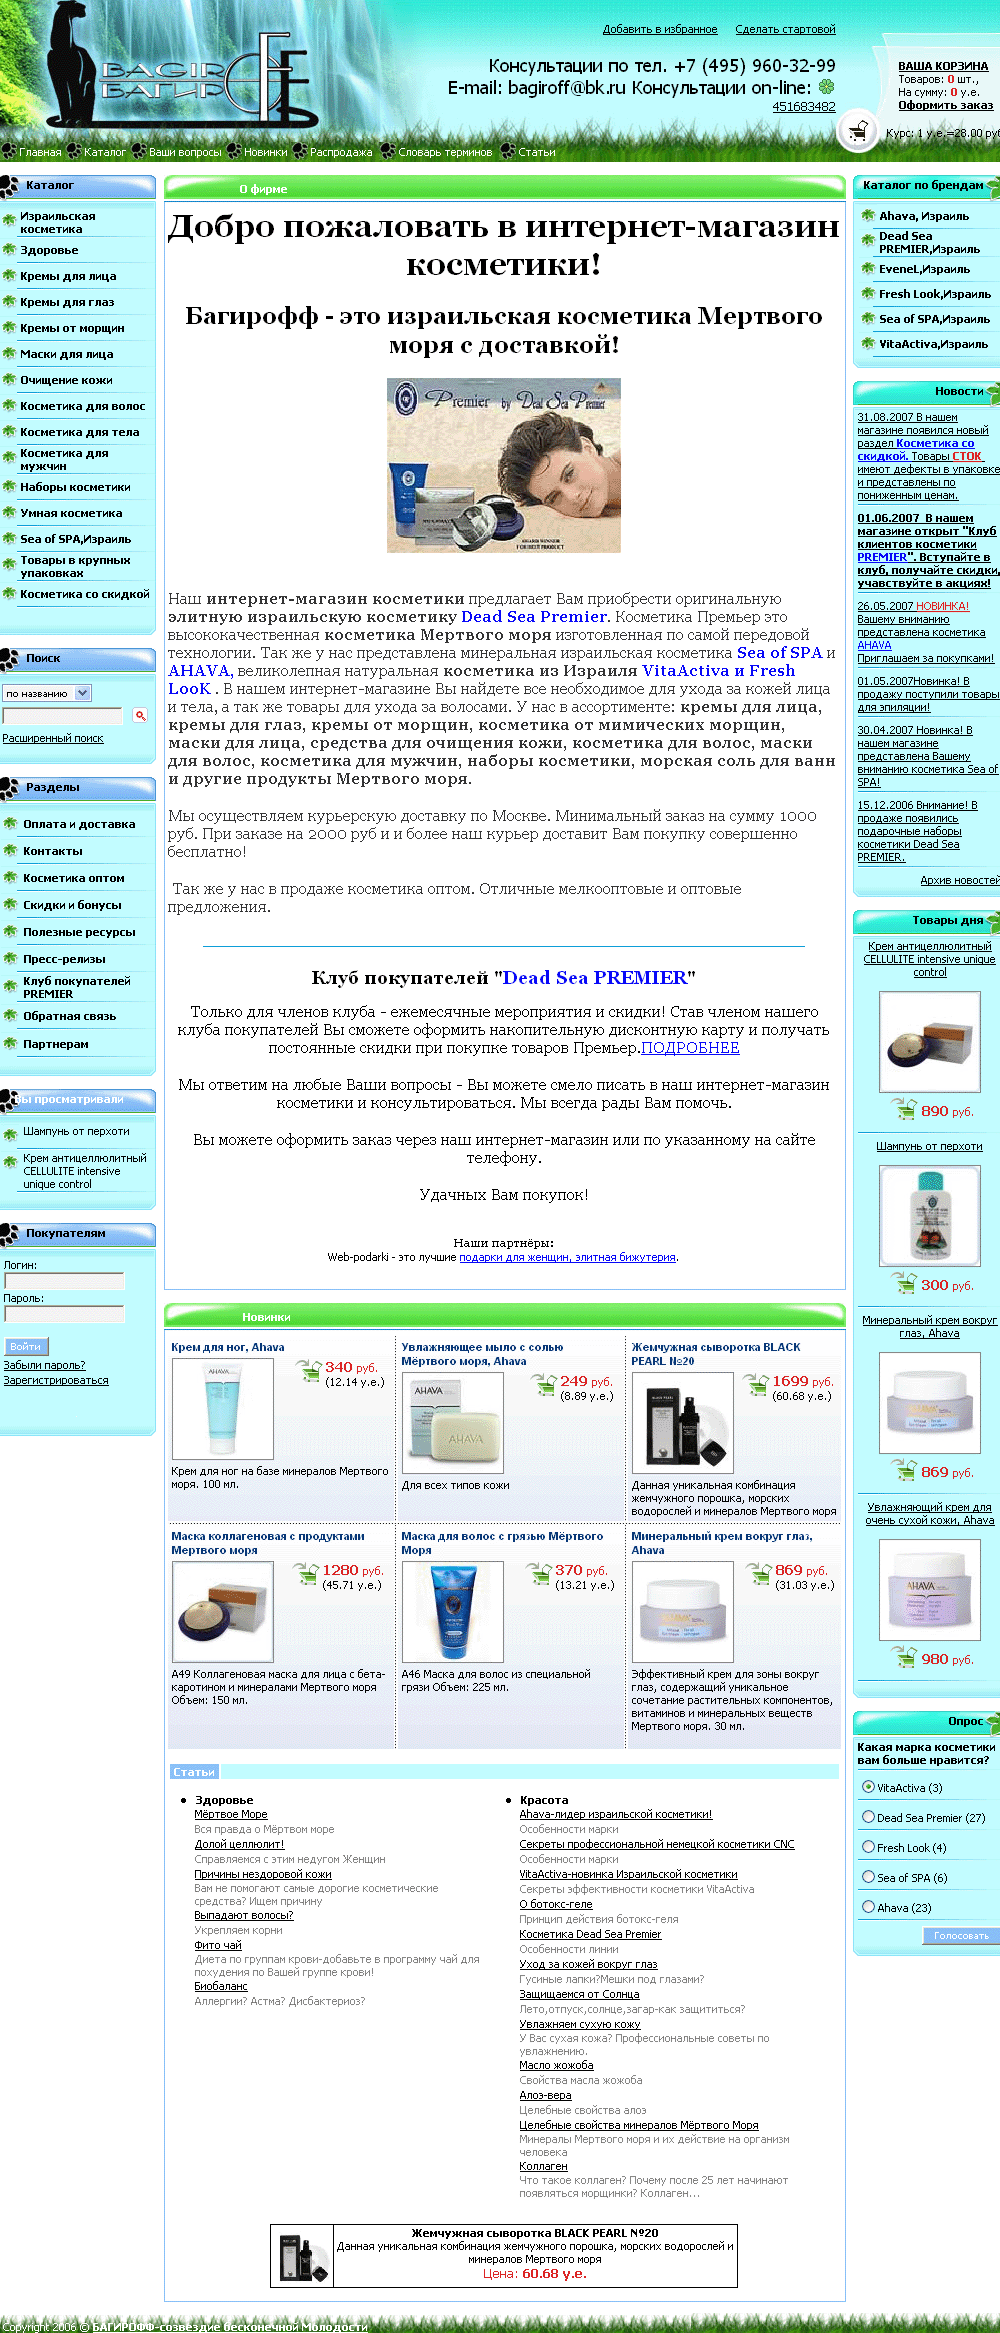 Cозданый интернет-магазин товаров для здоровья